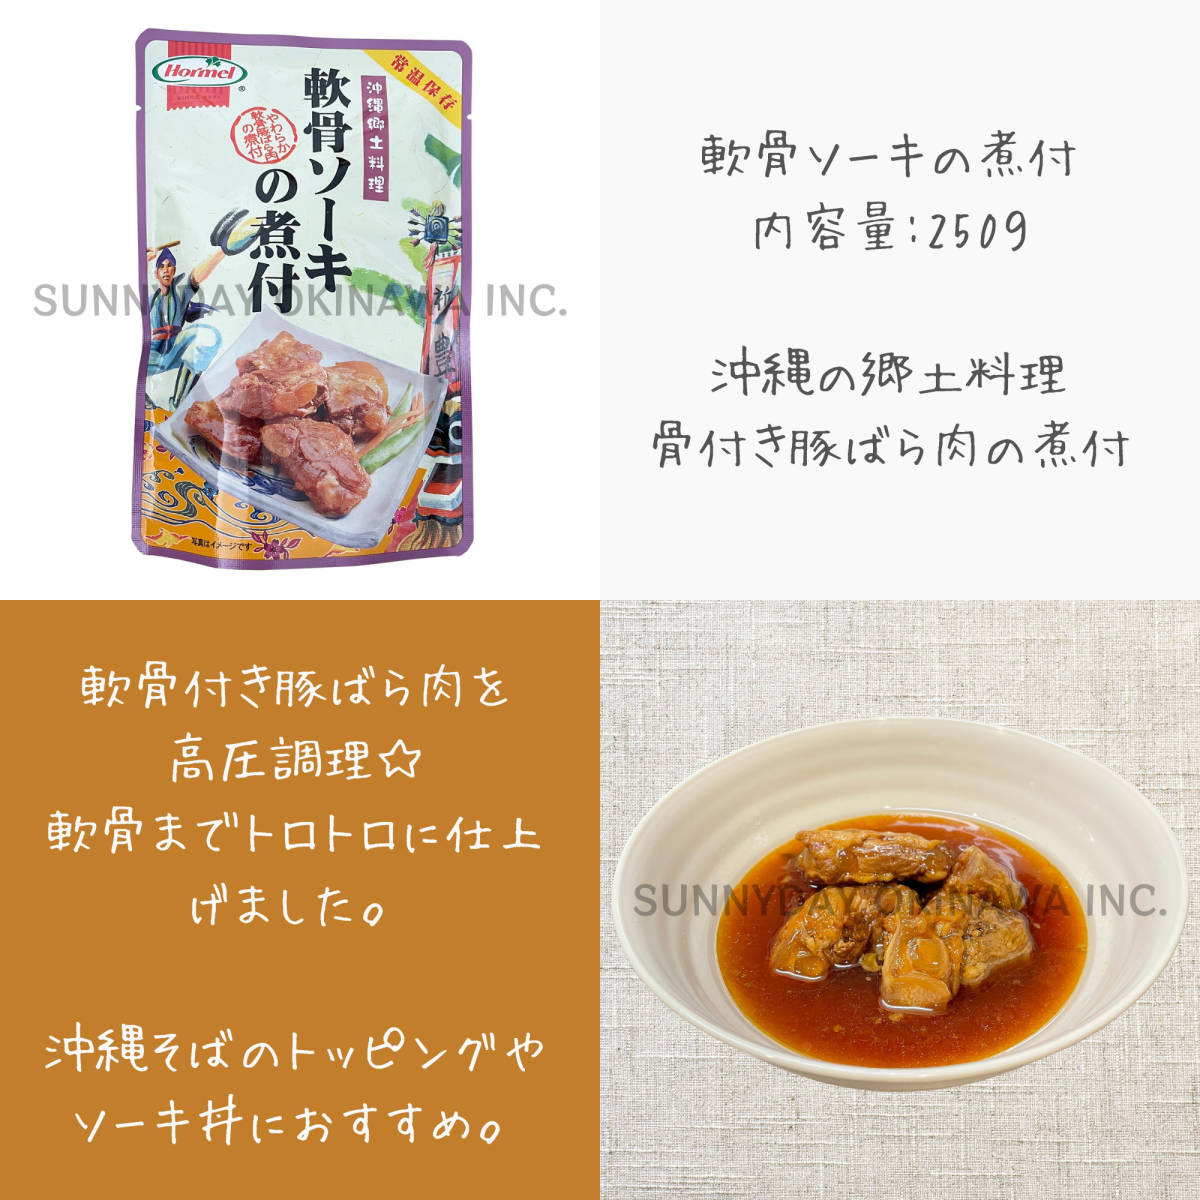  три листов мясо . есть ..so-ki. . есть 6 пакет комплект Okinawa сигнал meru рагу рафуте свинья рагу из мяса или рыбы в кубиках so-ki фарфоровая пиала со-ки соба Okinawa соба . земля производство ваш заказ 